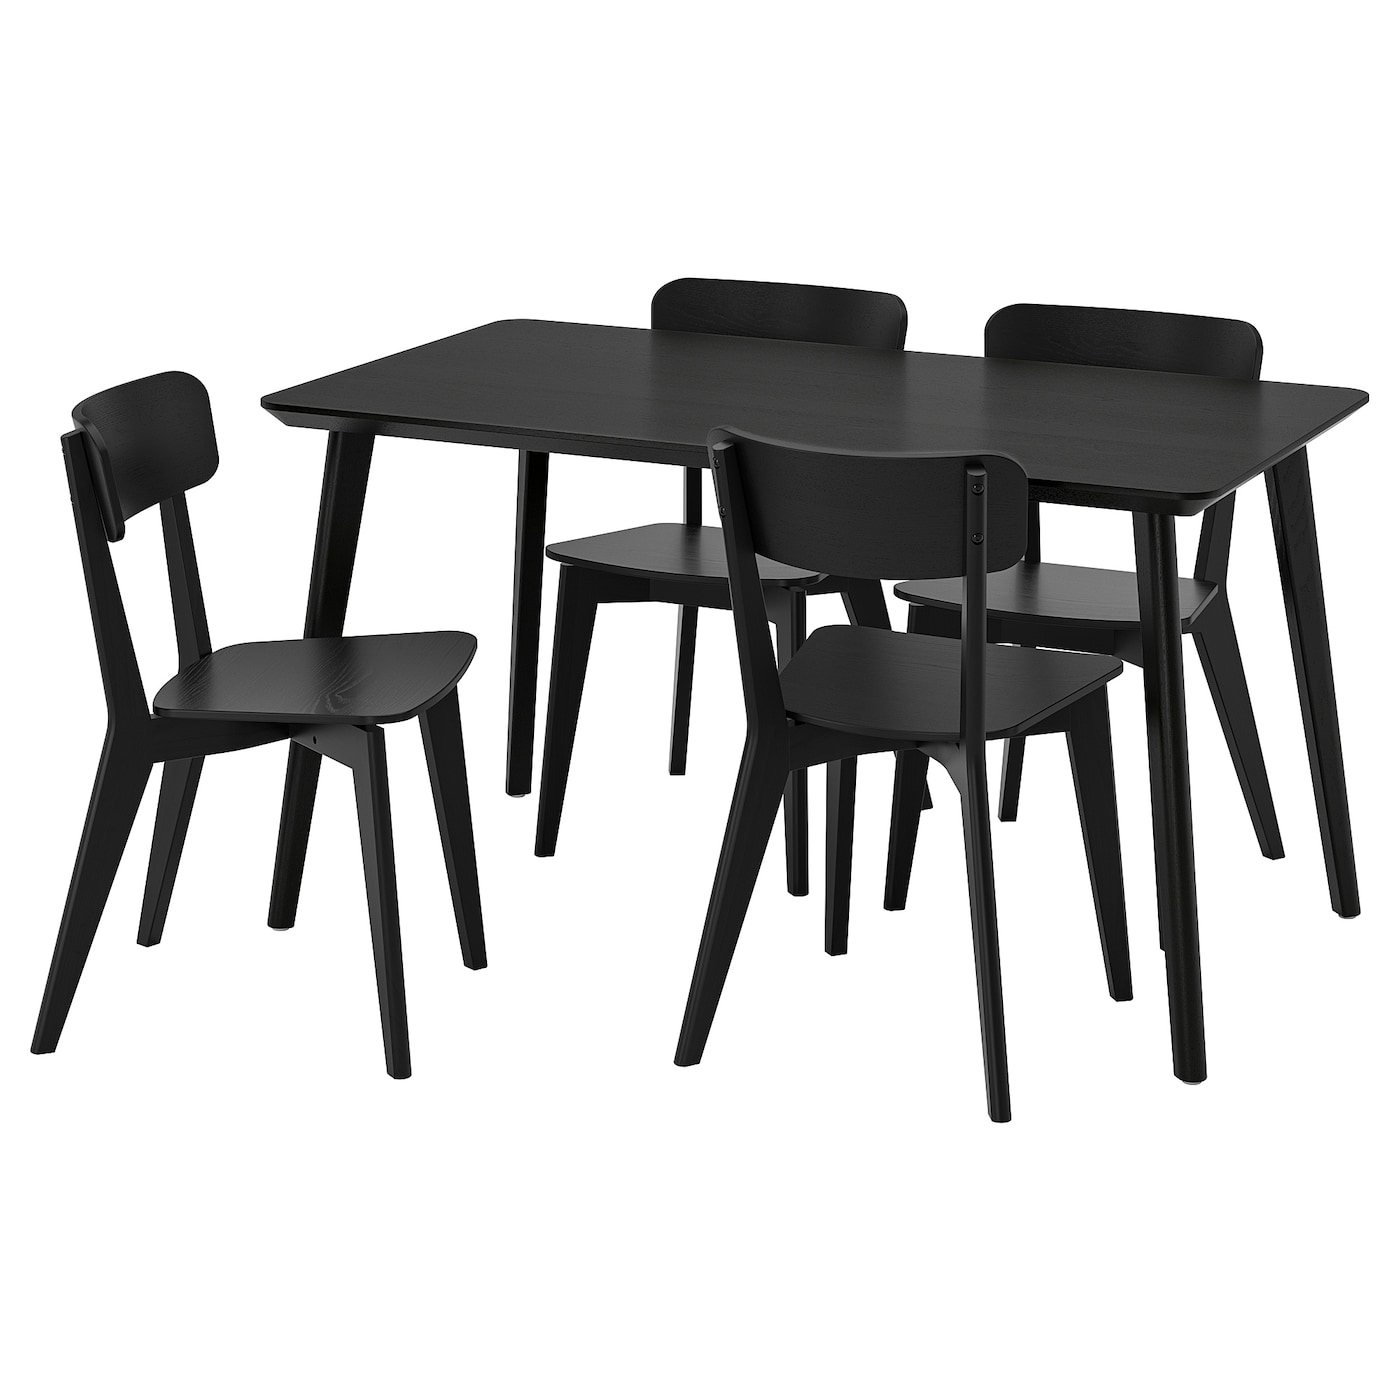 Стол и 4 стула - LISABO / LISABO IKEA/ ЛИСАБО ИКЕА, 140х78х74 см, черный